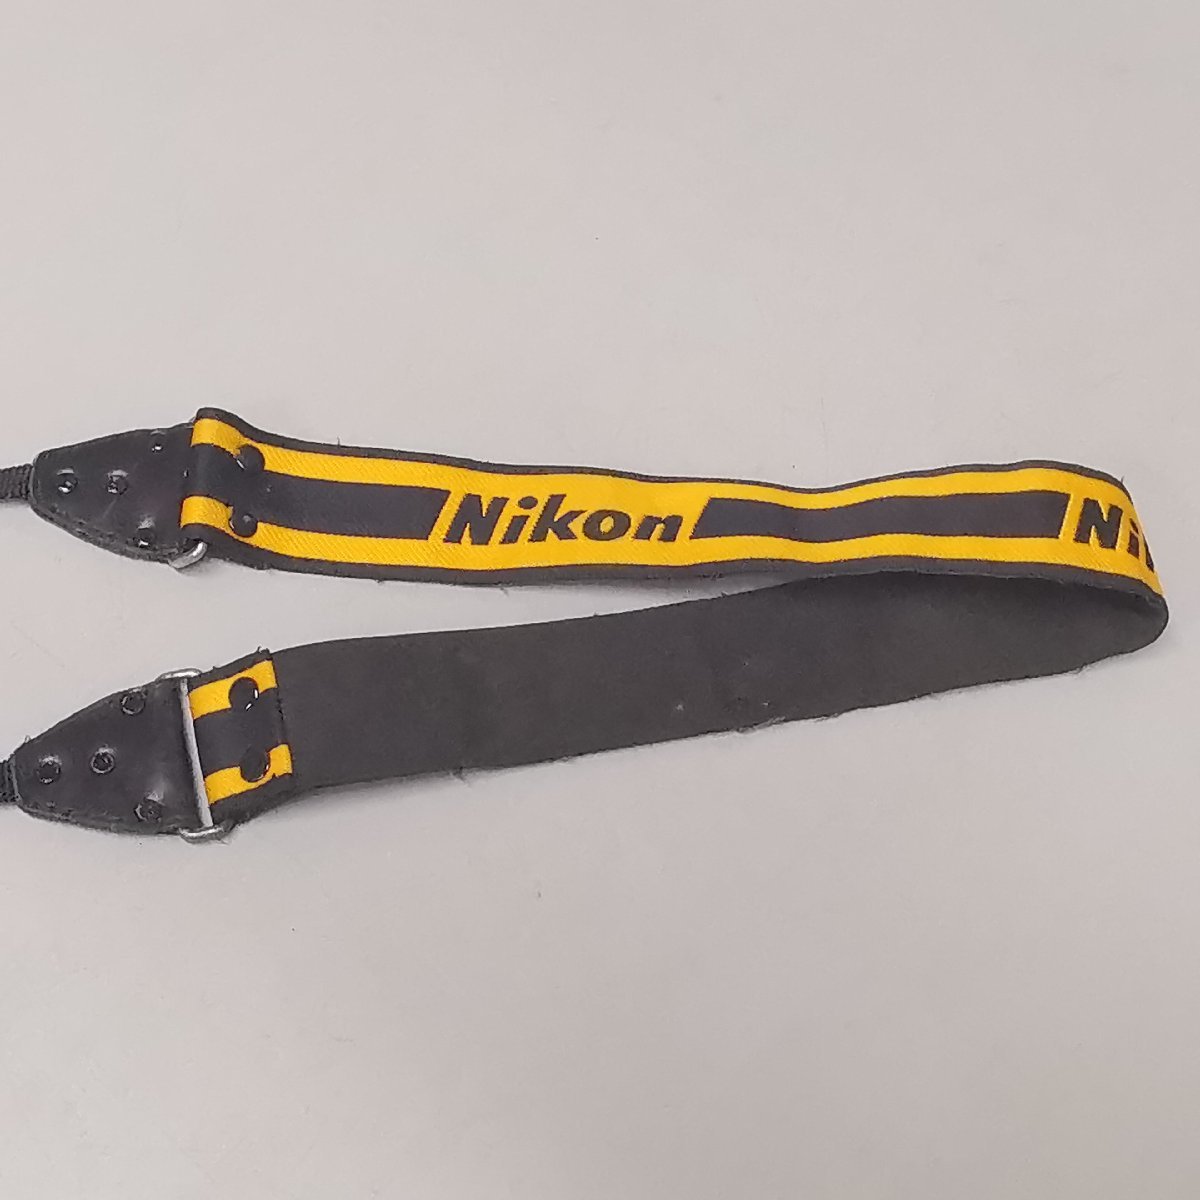 Nikon ニコン カメラ ストラップ 黄色(イエロー)×黒色(ブラック) リベット 鋲留め ボーダー ショルダー ストライプ アクセサリー Z3583_画像4